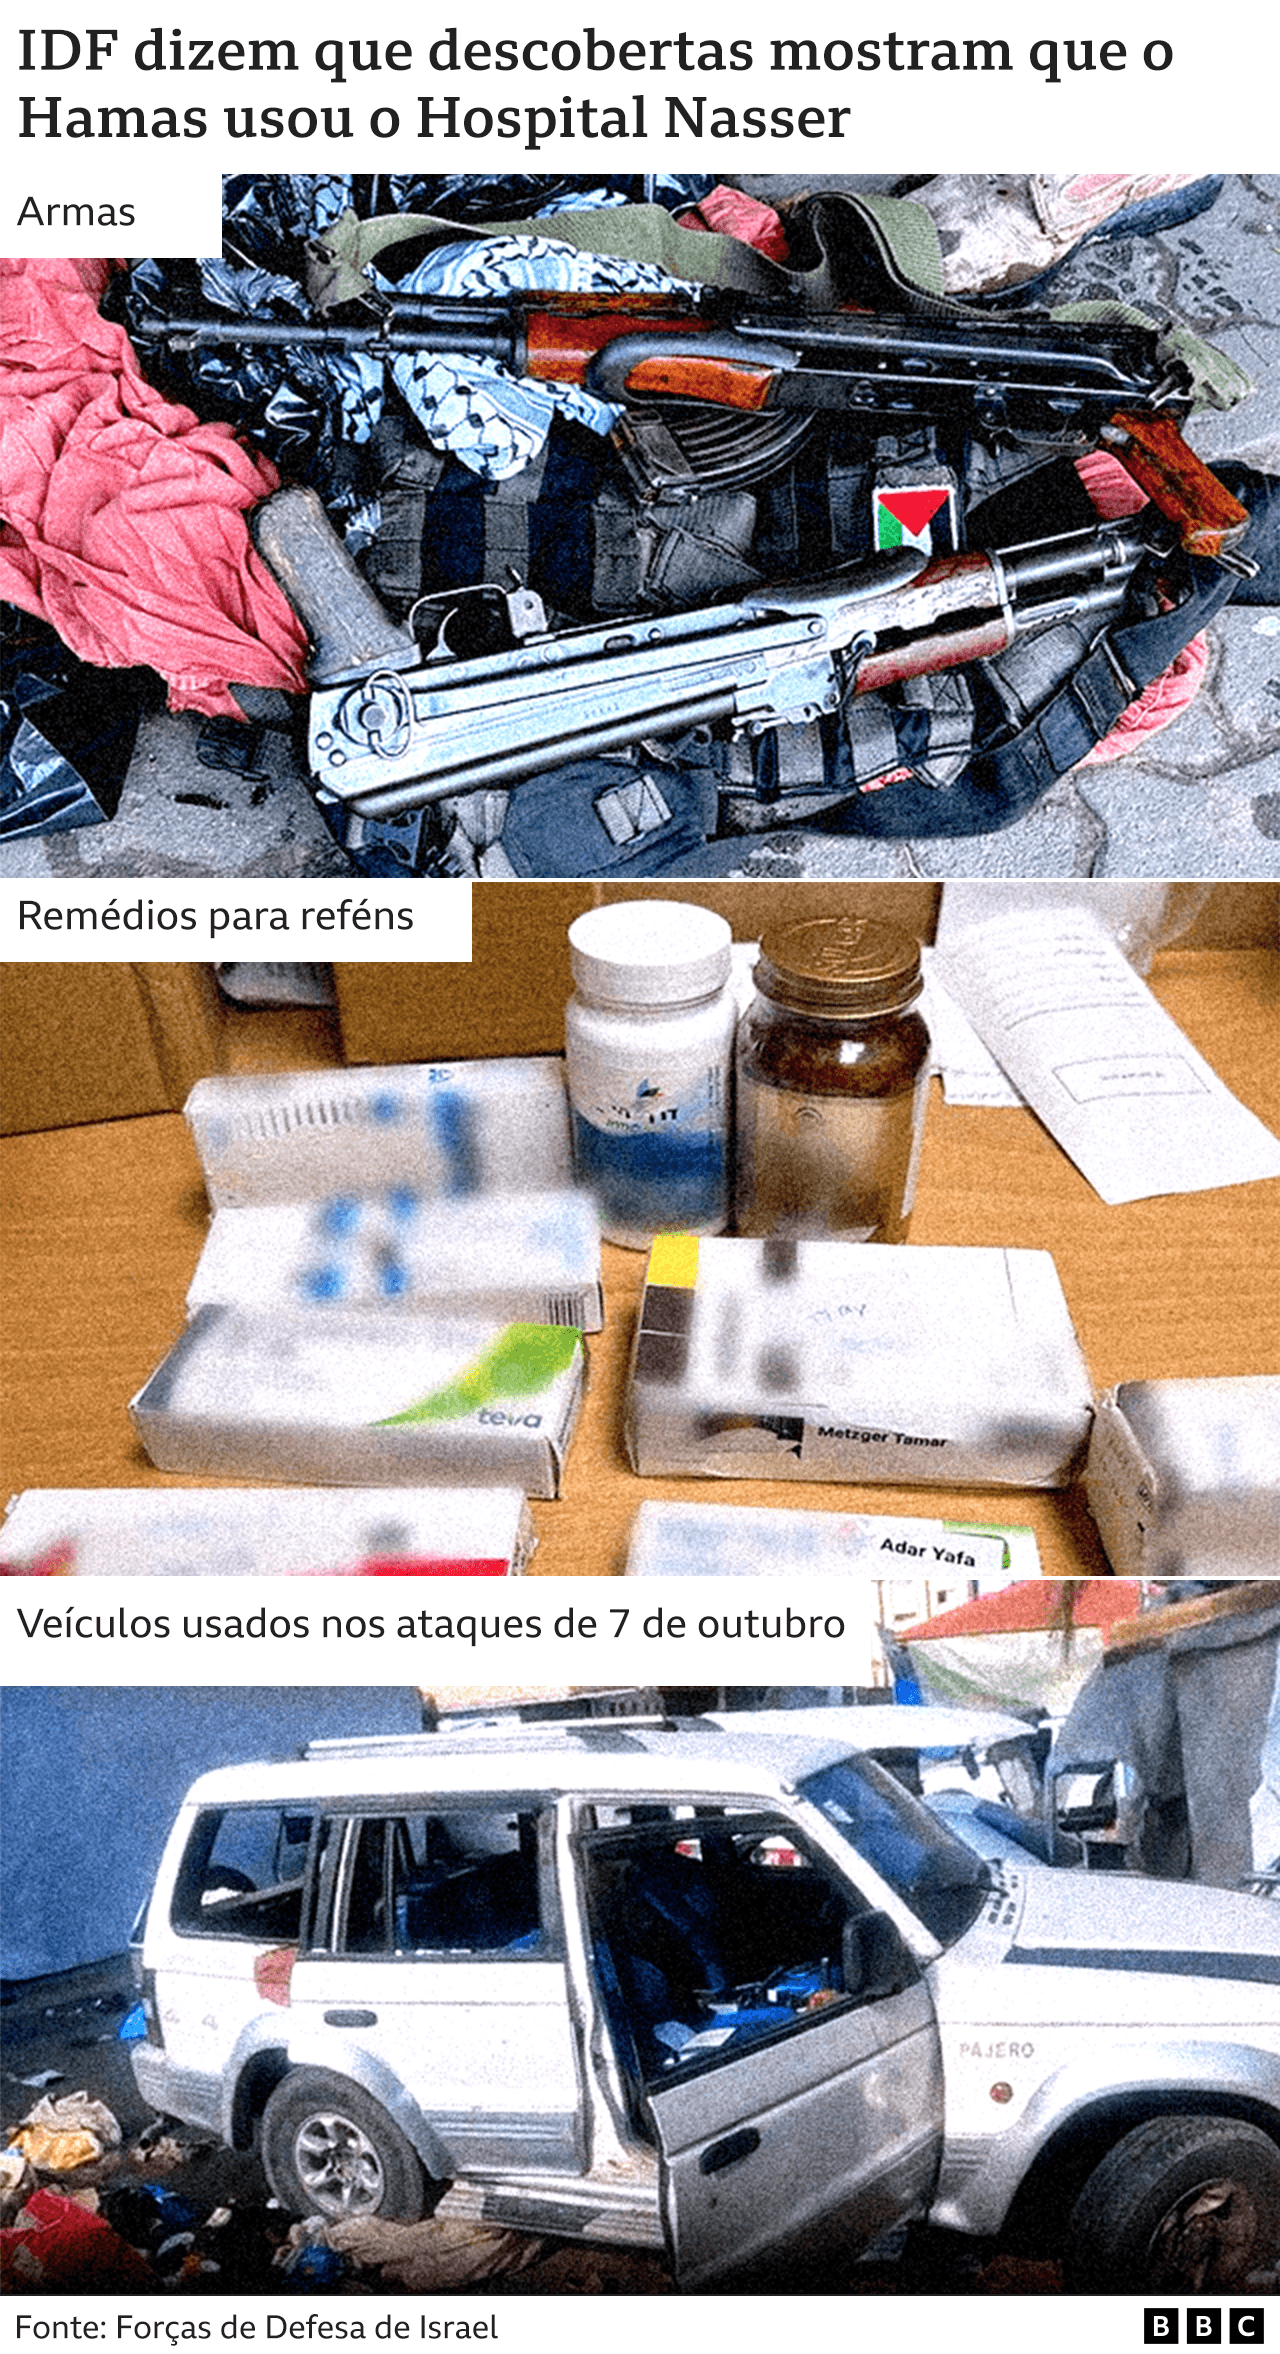 Imagens dos items encontrados durante invasão de Israel ao Hospital Nasser